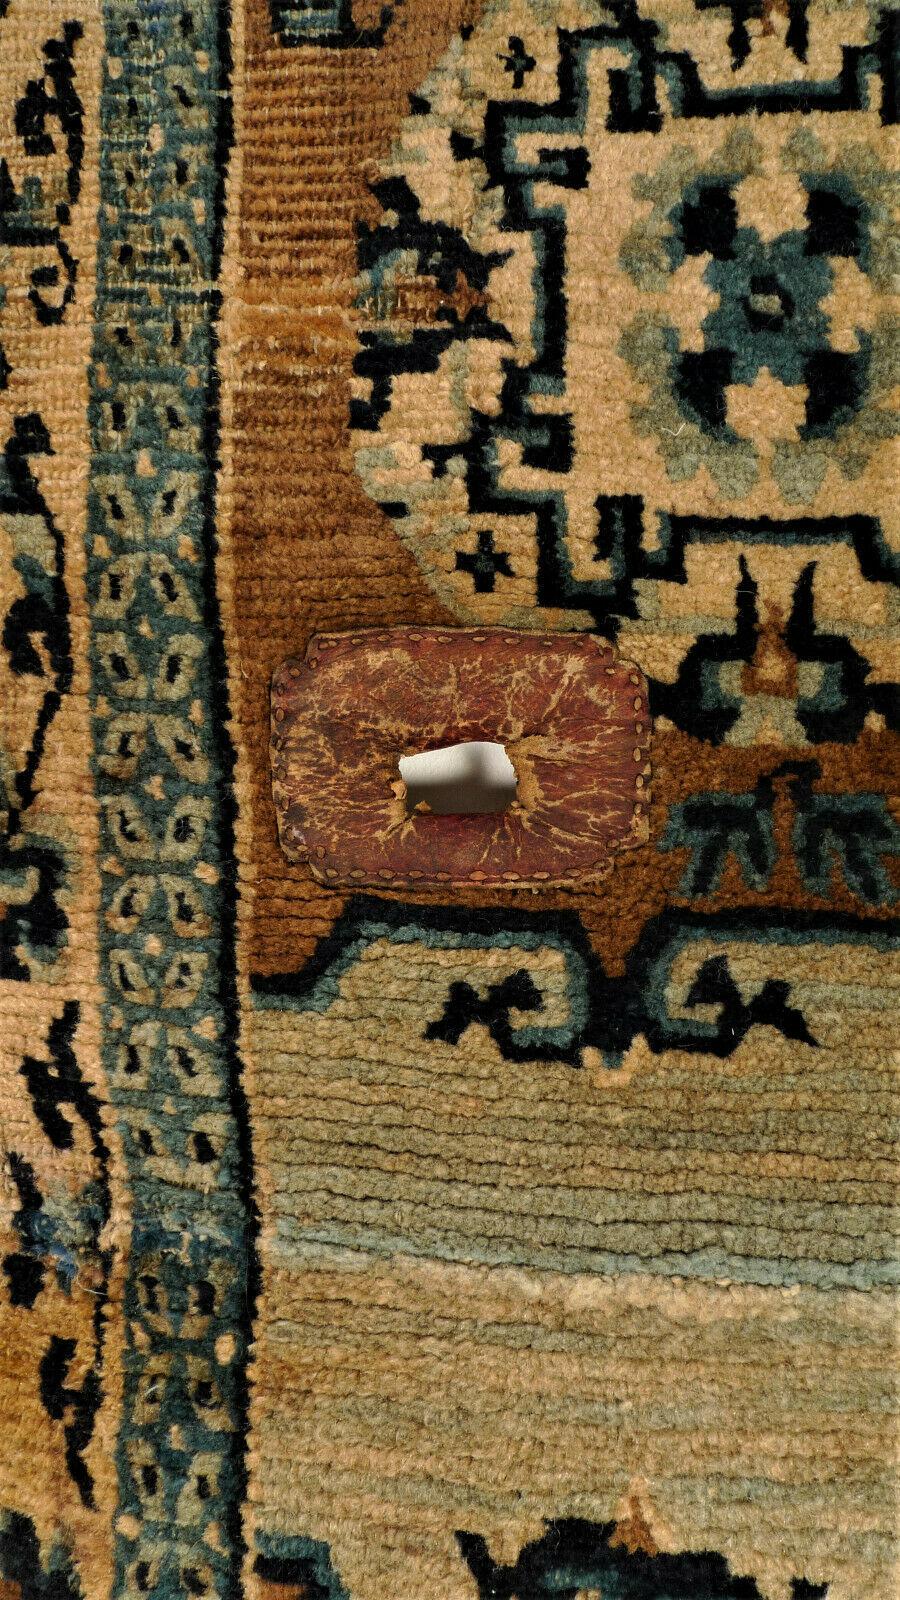 Eine seltene Ningxia-Satteldecke mit reinen Naturfarben, sowie mit der originalen ungefärbten beigen Schurwolle. Die beiden Sattellöcher sind noch mit der ursprünglichen roten Ledereinfassung versehen. Wie alle antiken Bezüge in zwei Teilen